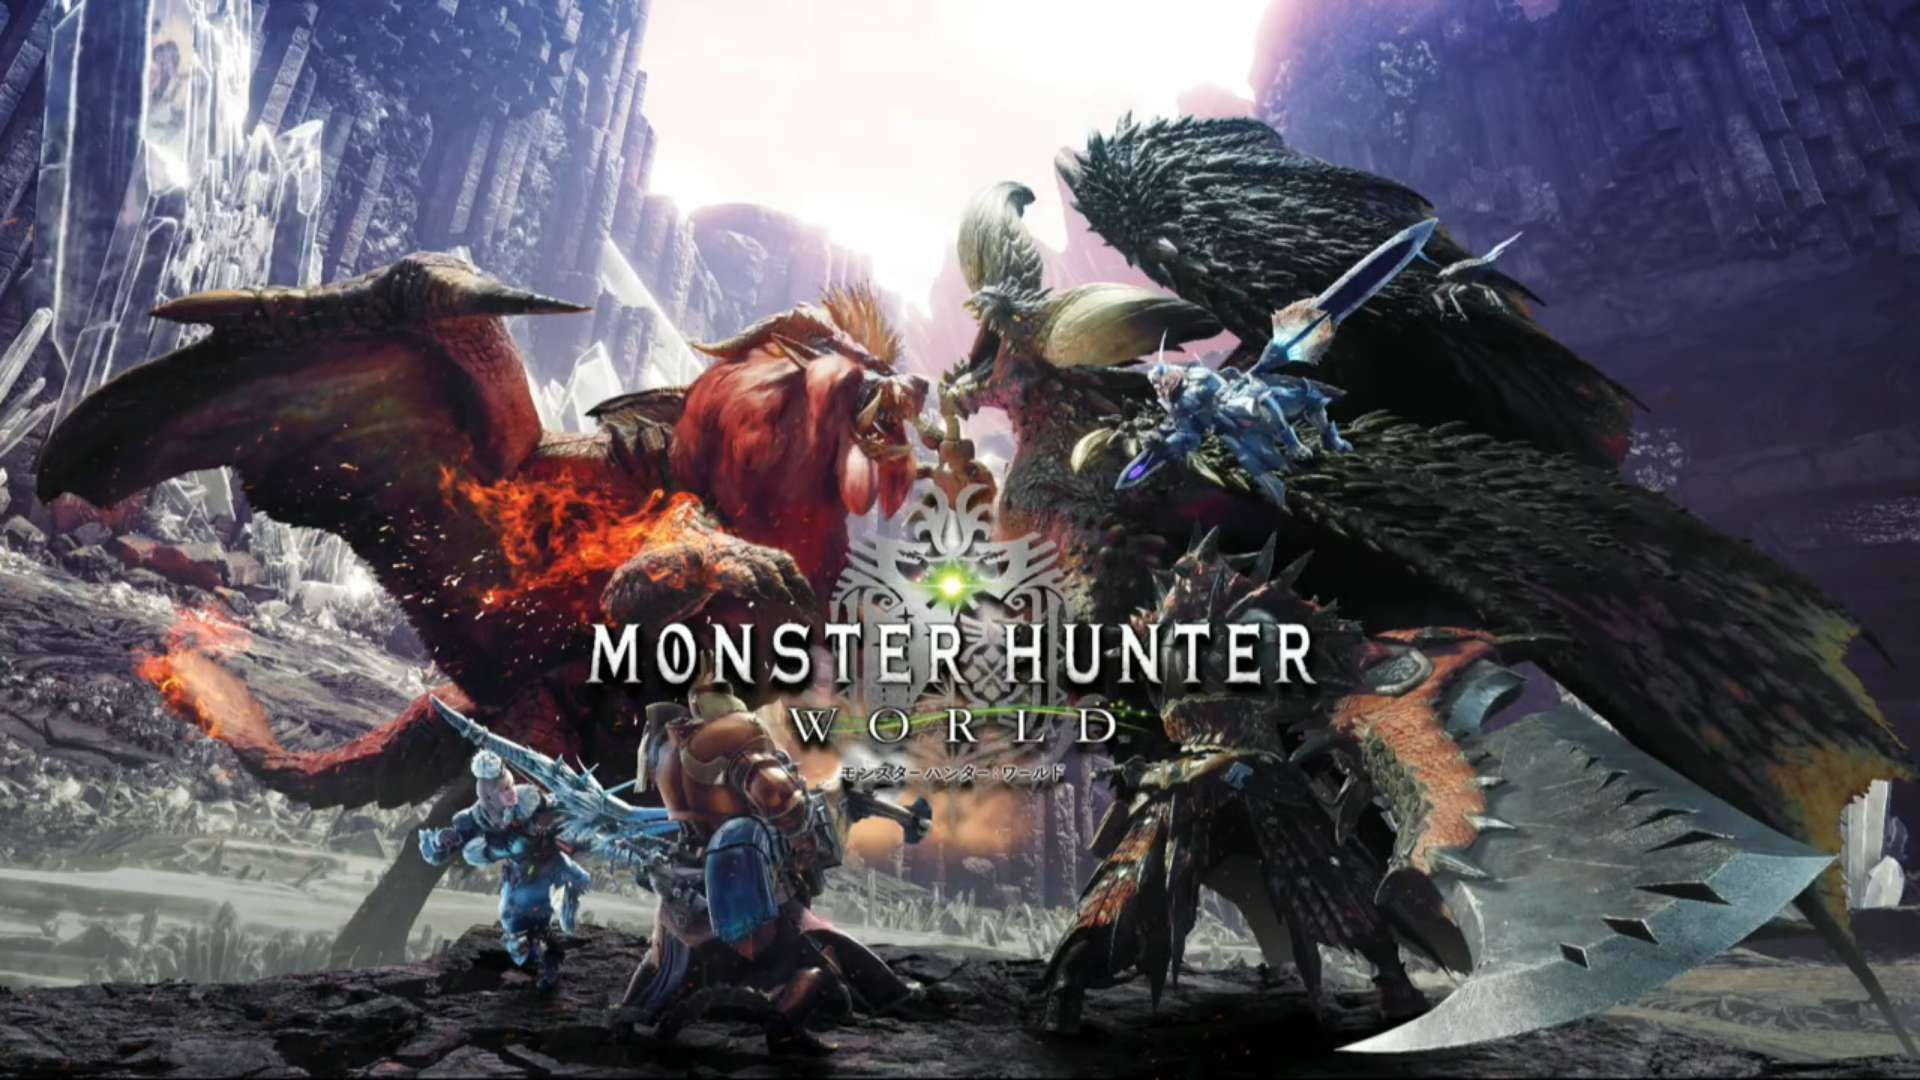 Monster Hunter World Wallpaper